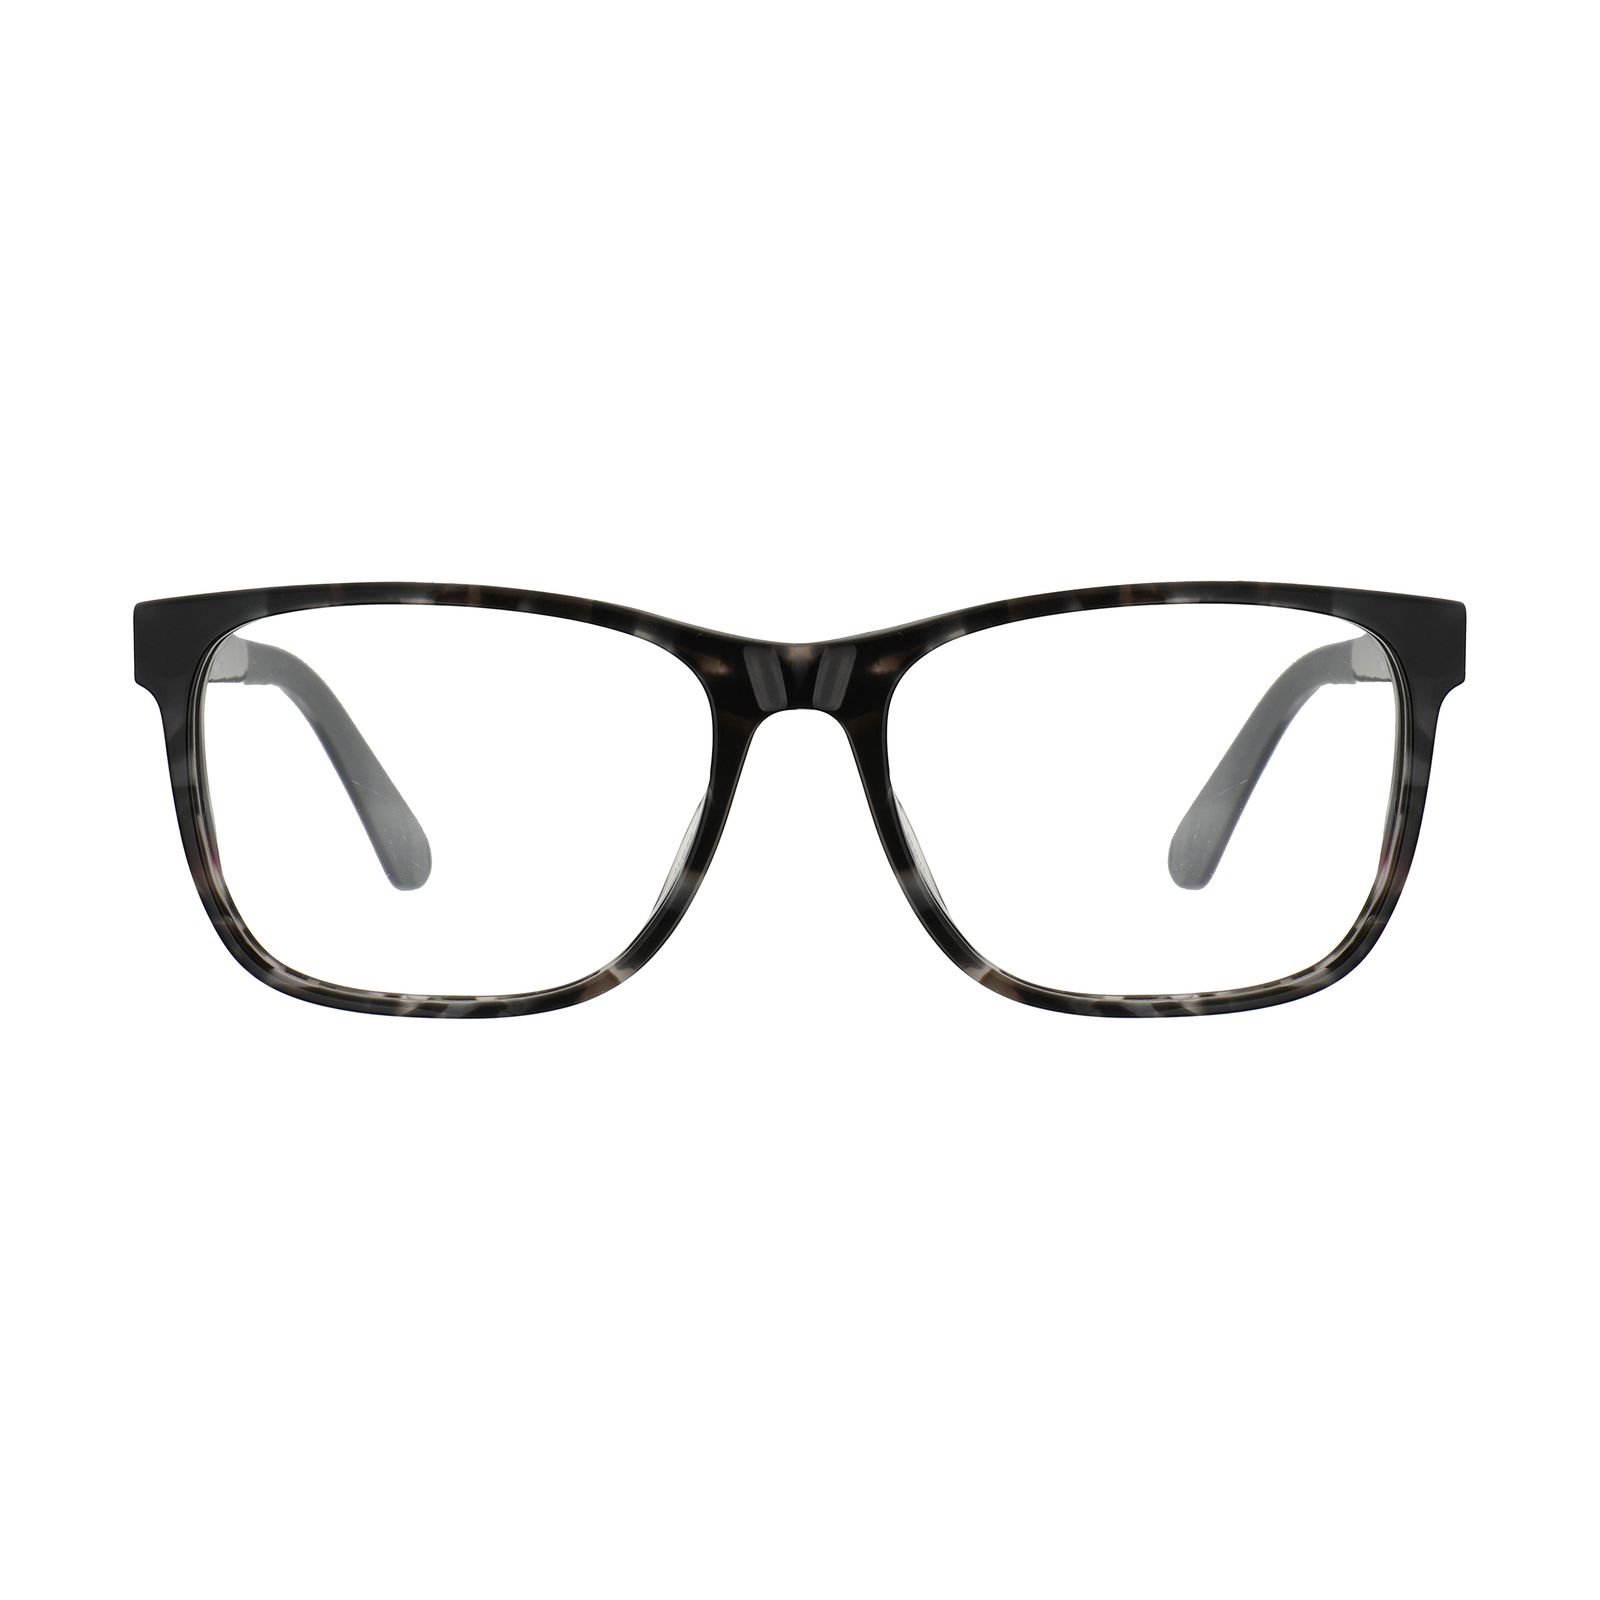 فریم عینک طبی زنانه کارولینا هررا مدل VHE858N-721 -  - 1